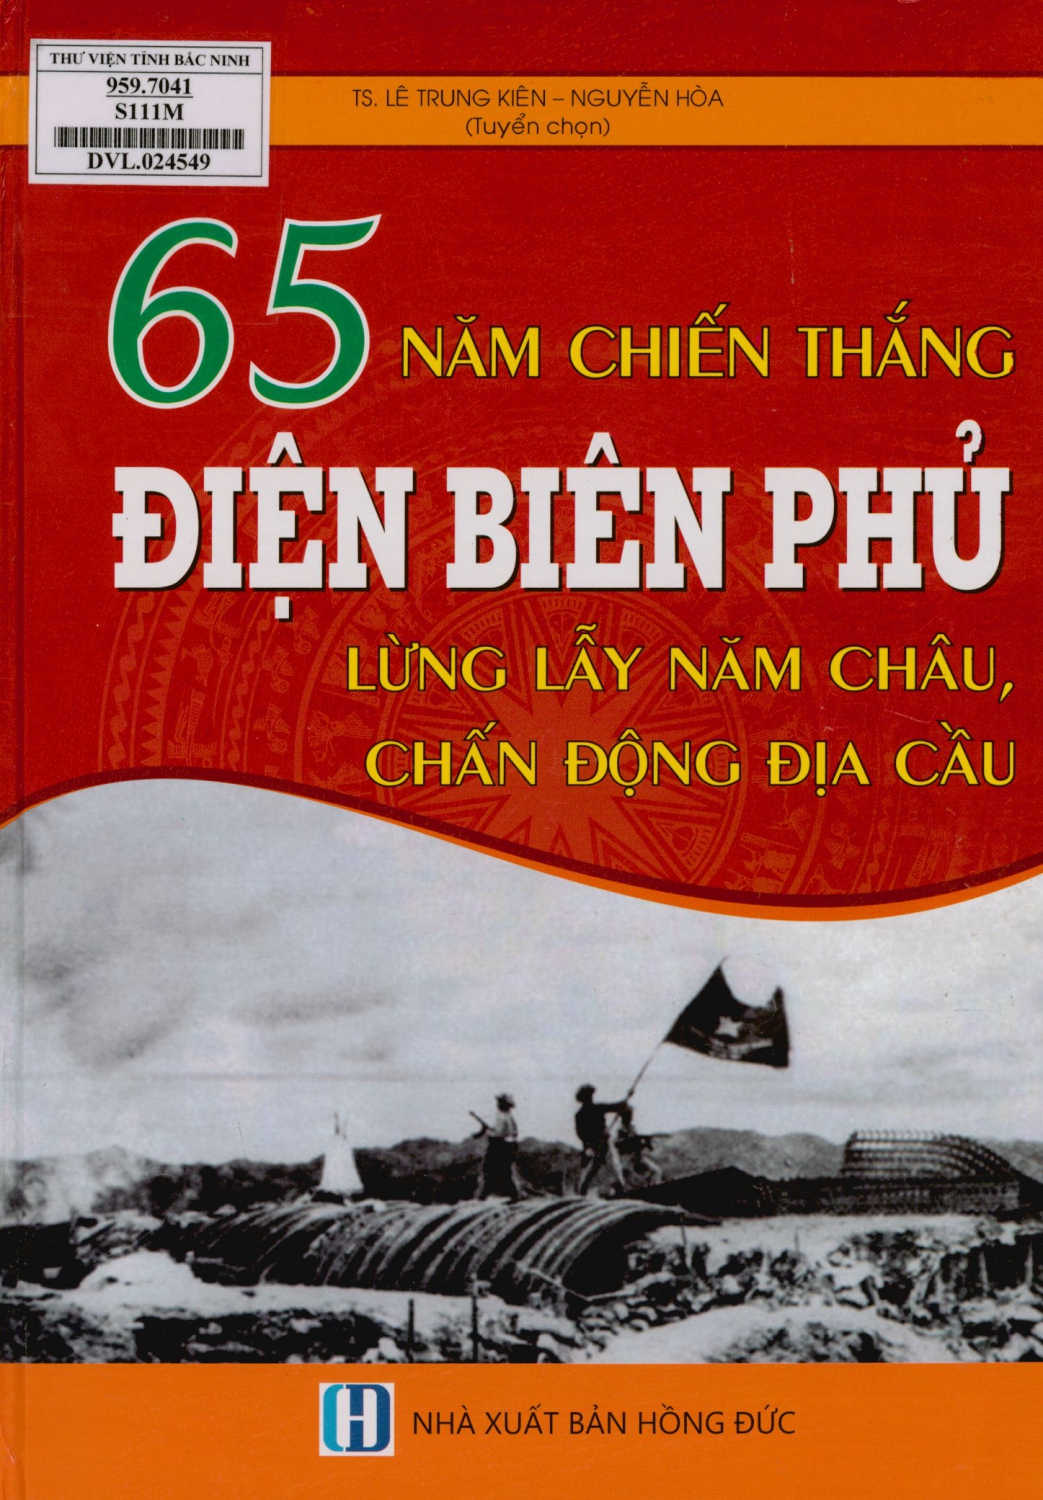 65 năm chiến thắng Điện Biên Phủ - lừng lẫy năm châu, chấn động địa cầu